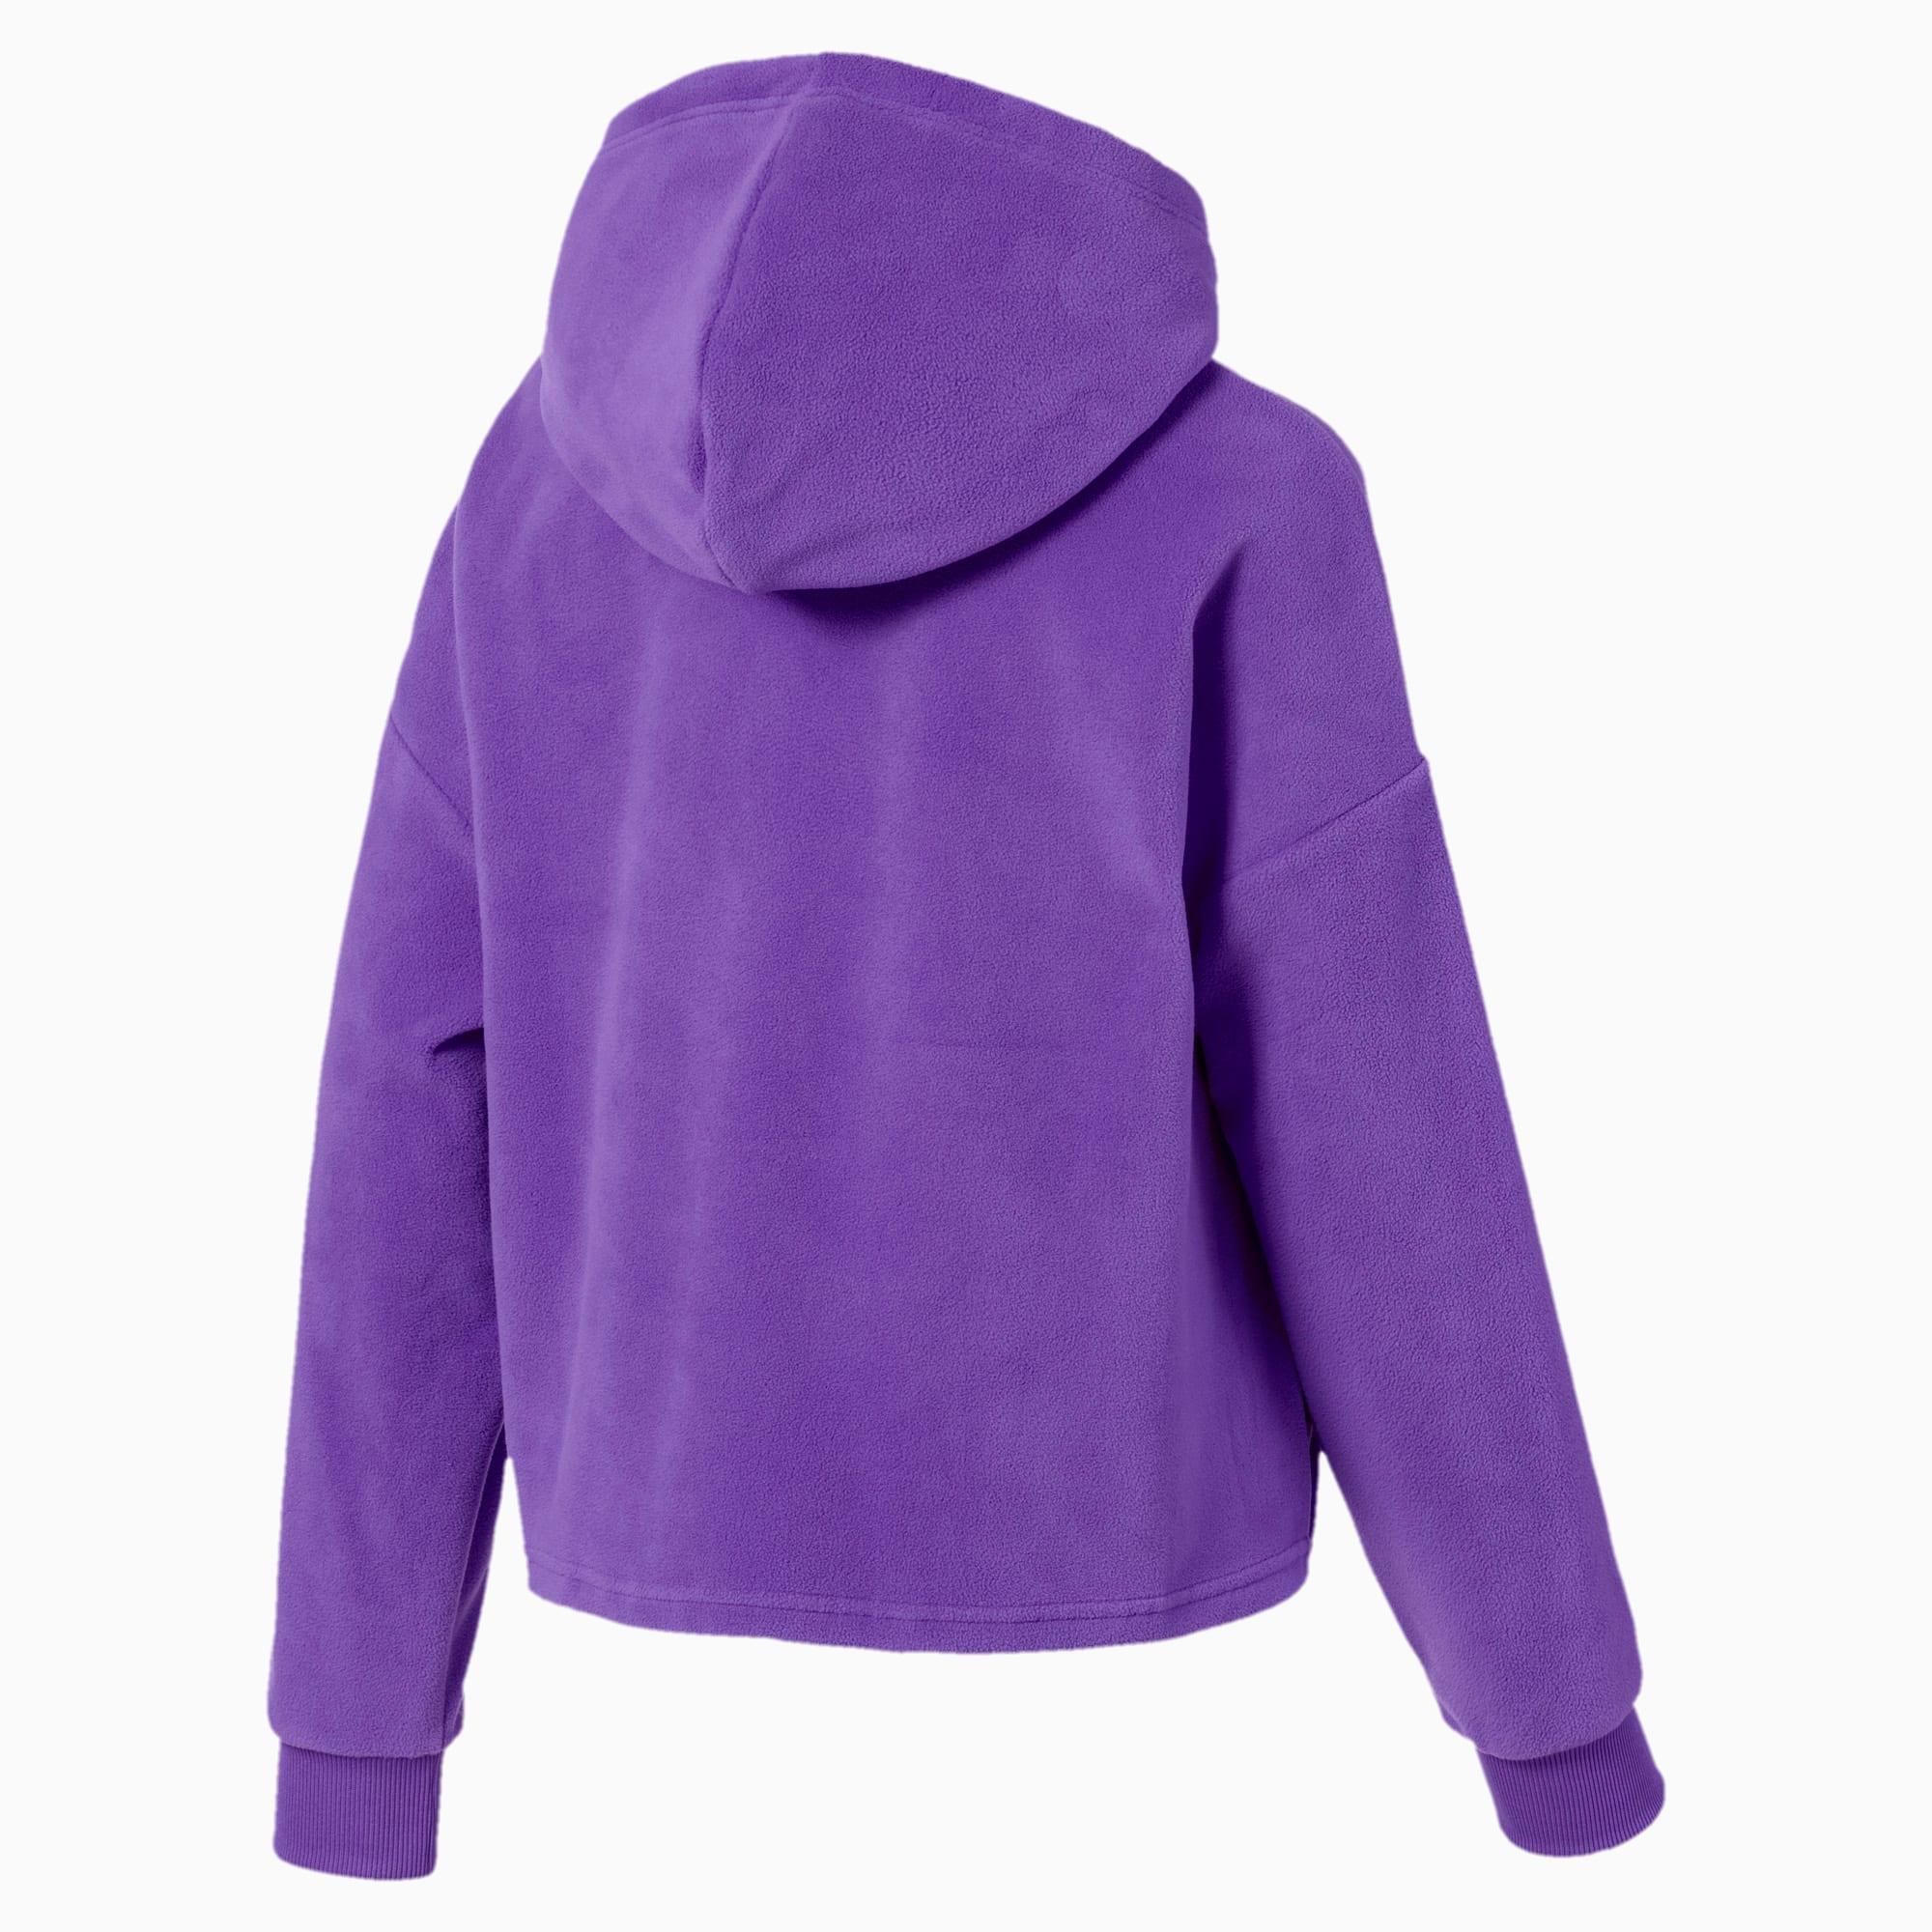 puma hoodie purple